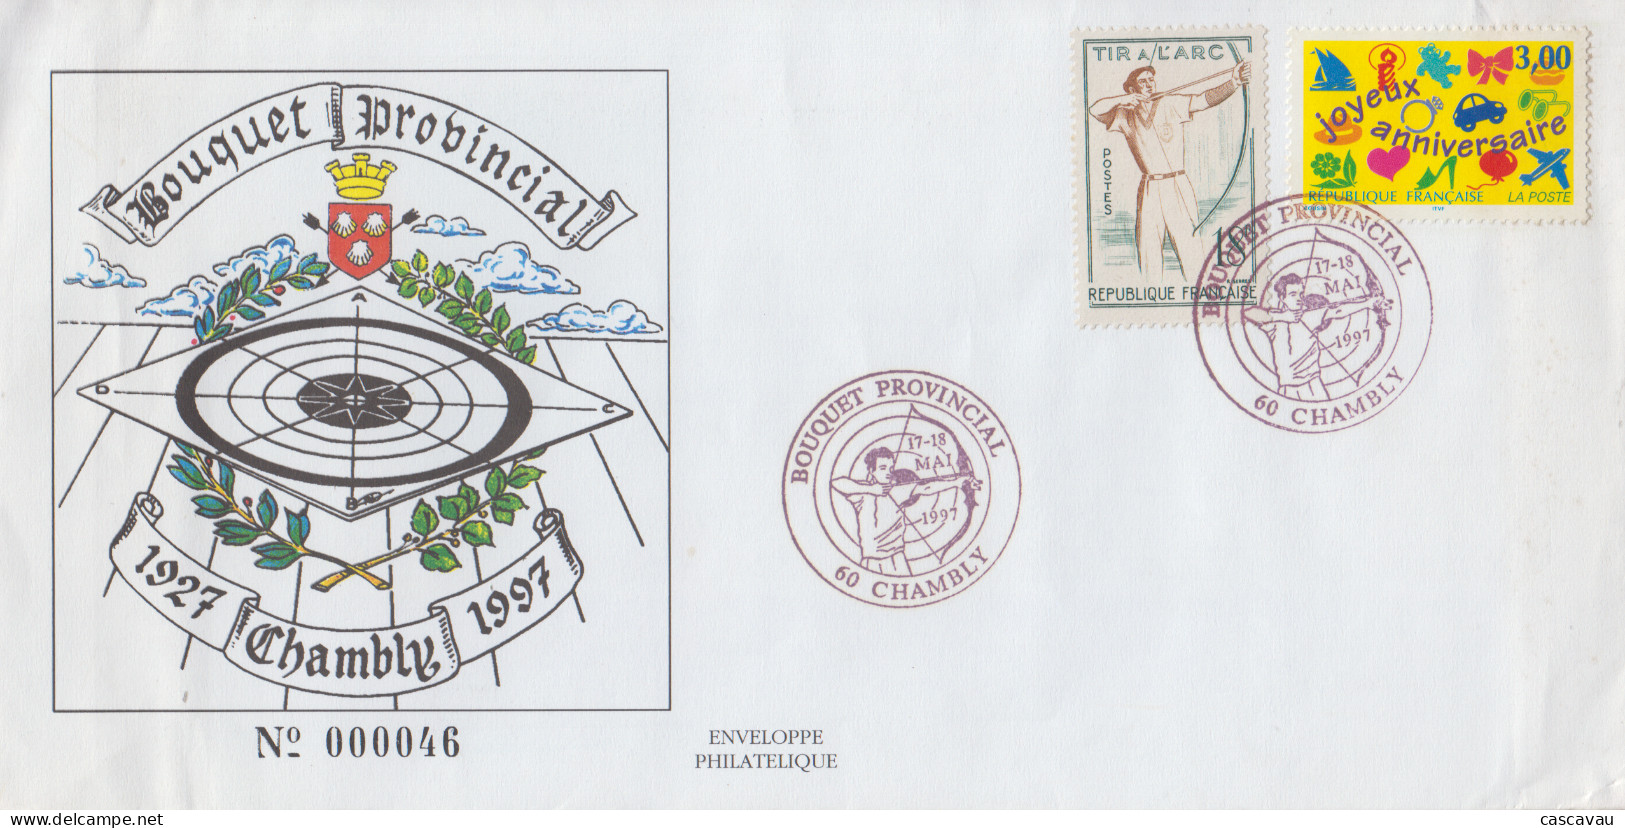 Enveloppe   FRANCE    TIR  A  L' ARC      BOUQUET  PROVINCIAL     CHAMBLY   1997 - Archery